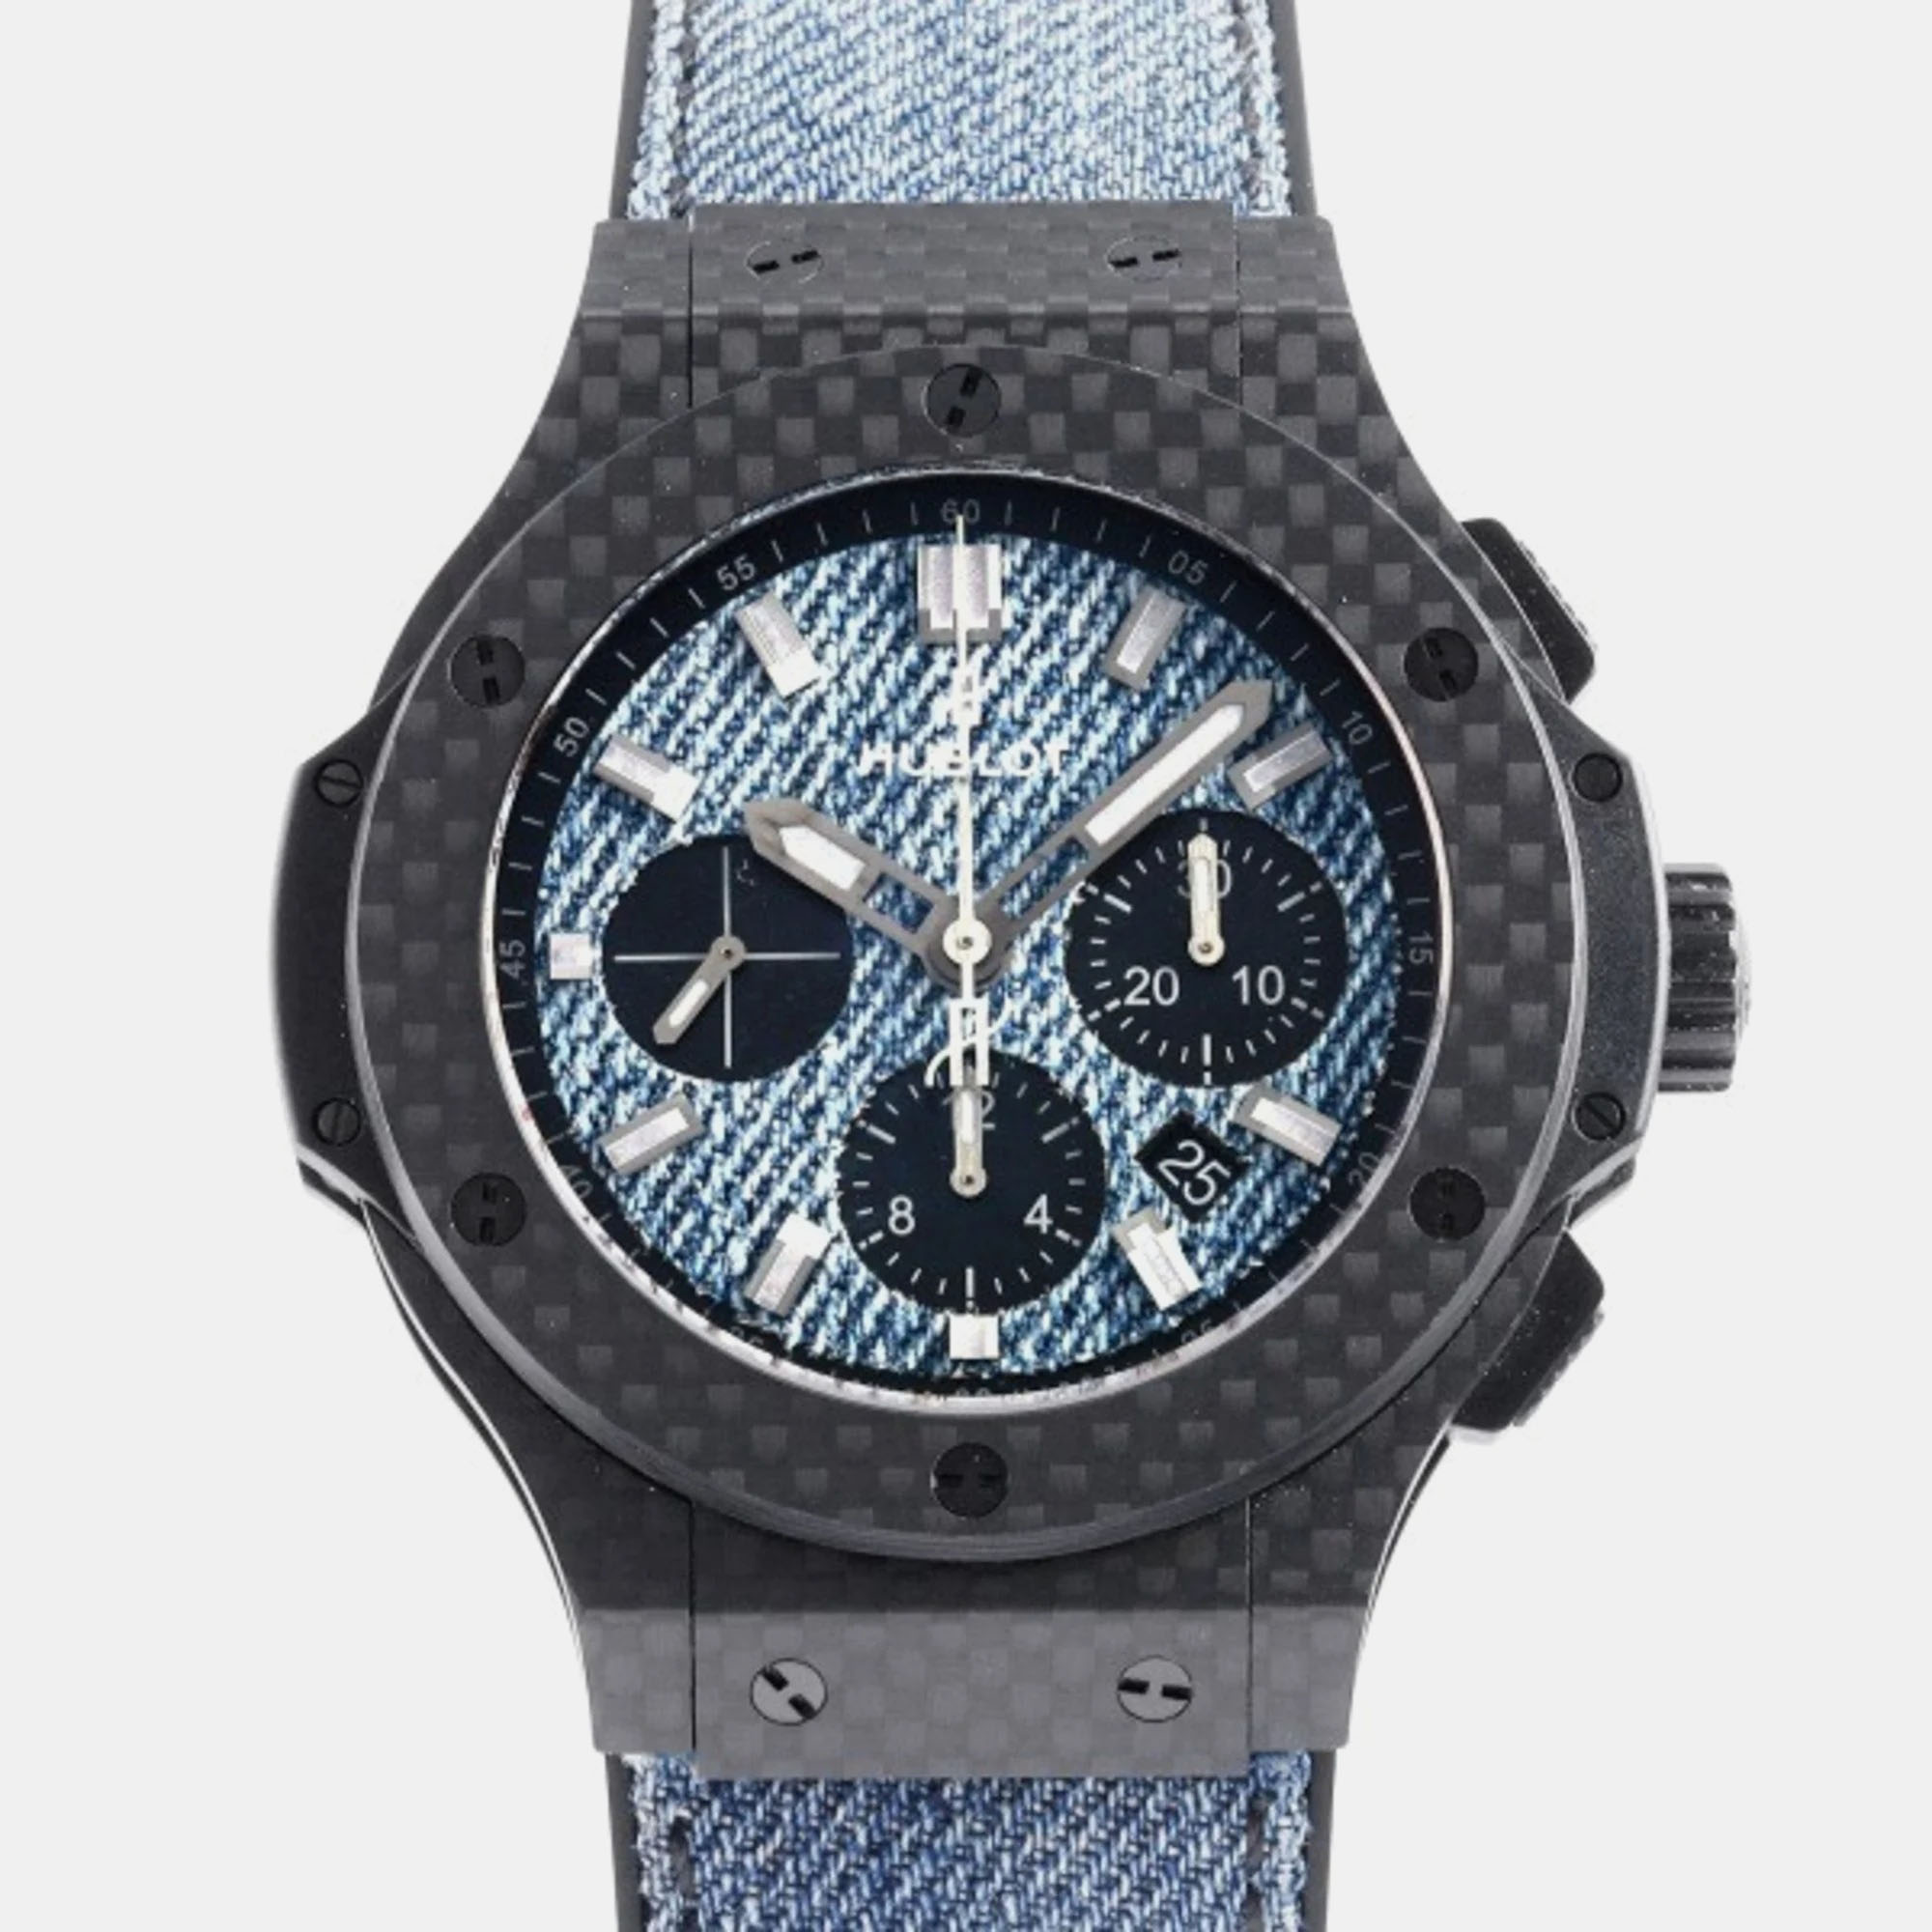 Hublot blue carbon big bang 301.qx.2740.nr.jeans16 automatic men's wristwatch 44 mm